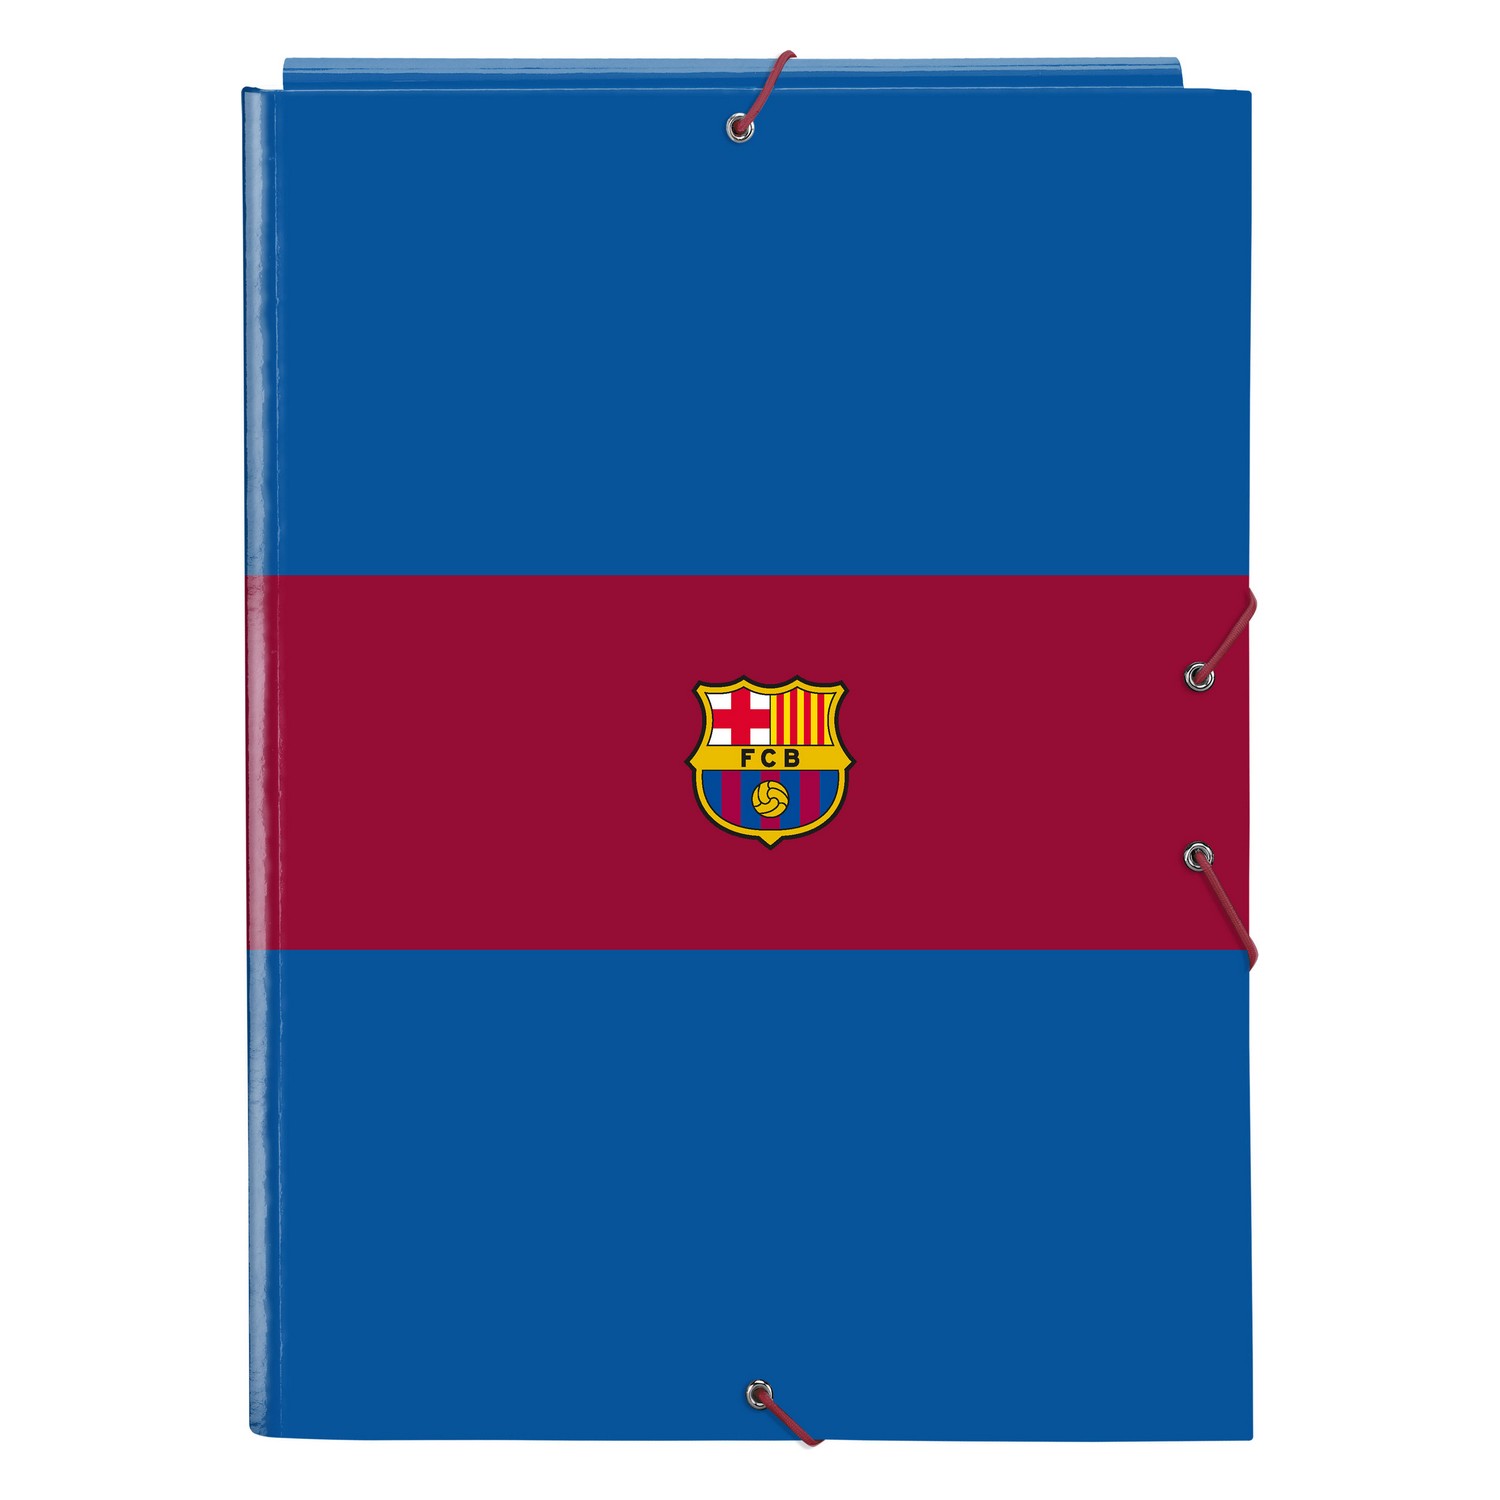 Folder F.C. Barcelona Kasztanowy Granatowy A4 (26 x 33.5 x 2.5 cm)